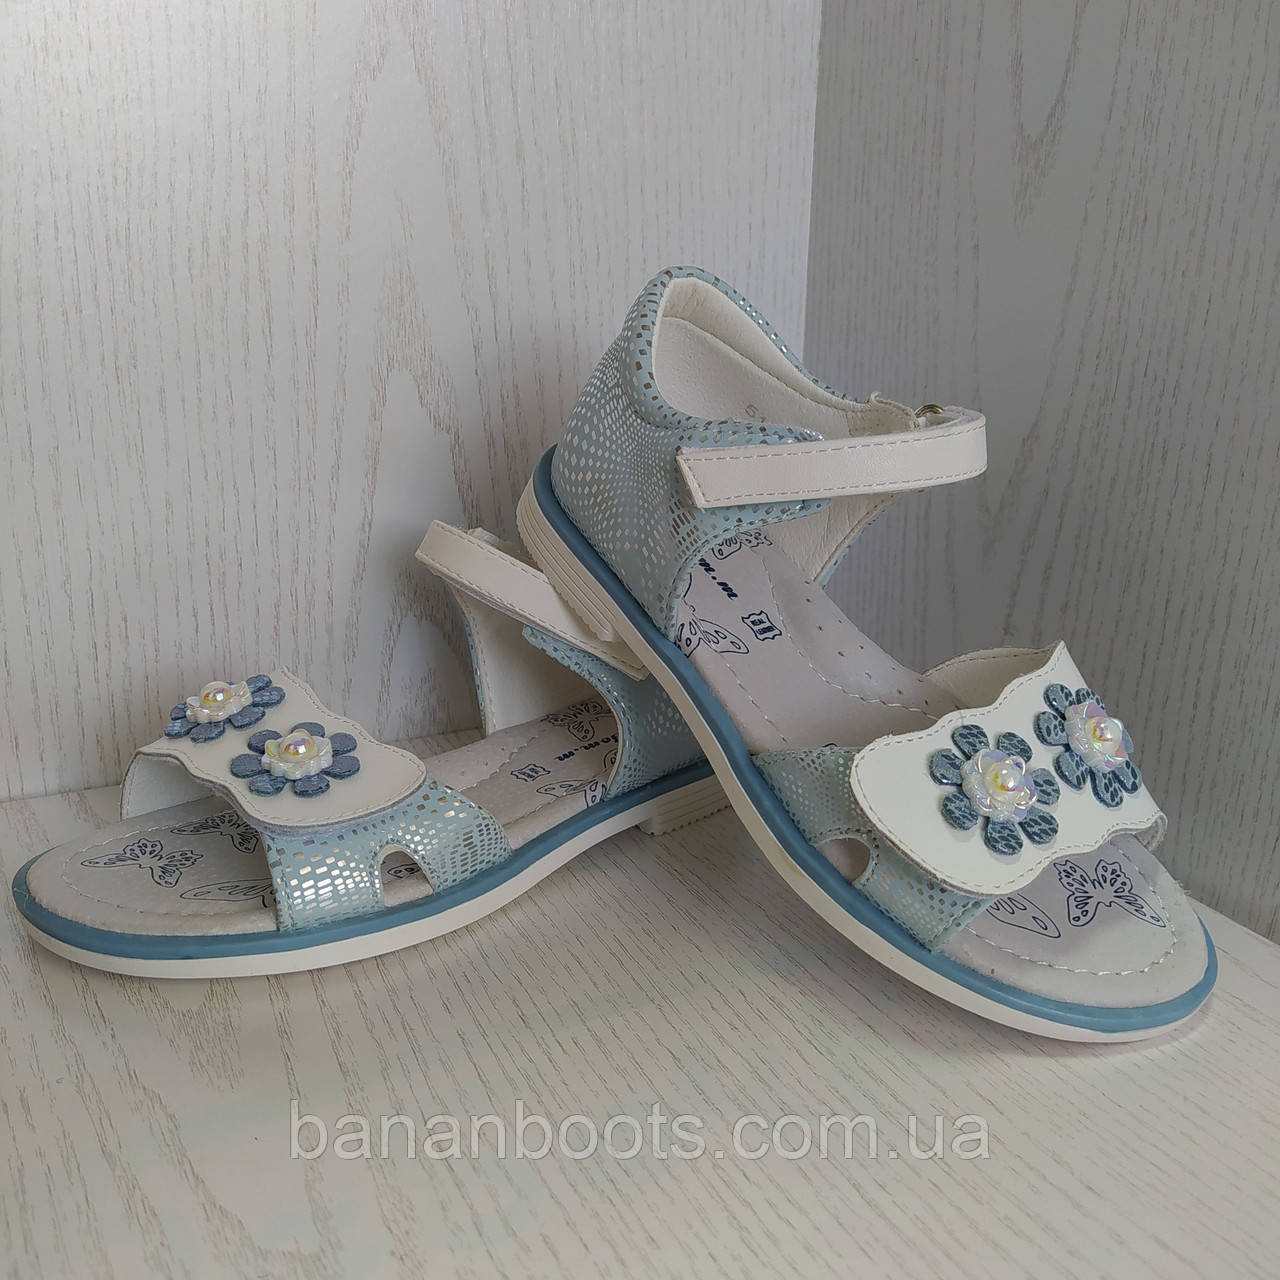 Босоніжки,сандалі дитячі для дівчинки 27р. сріблясто -біло-блакитні